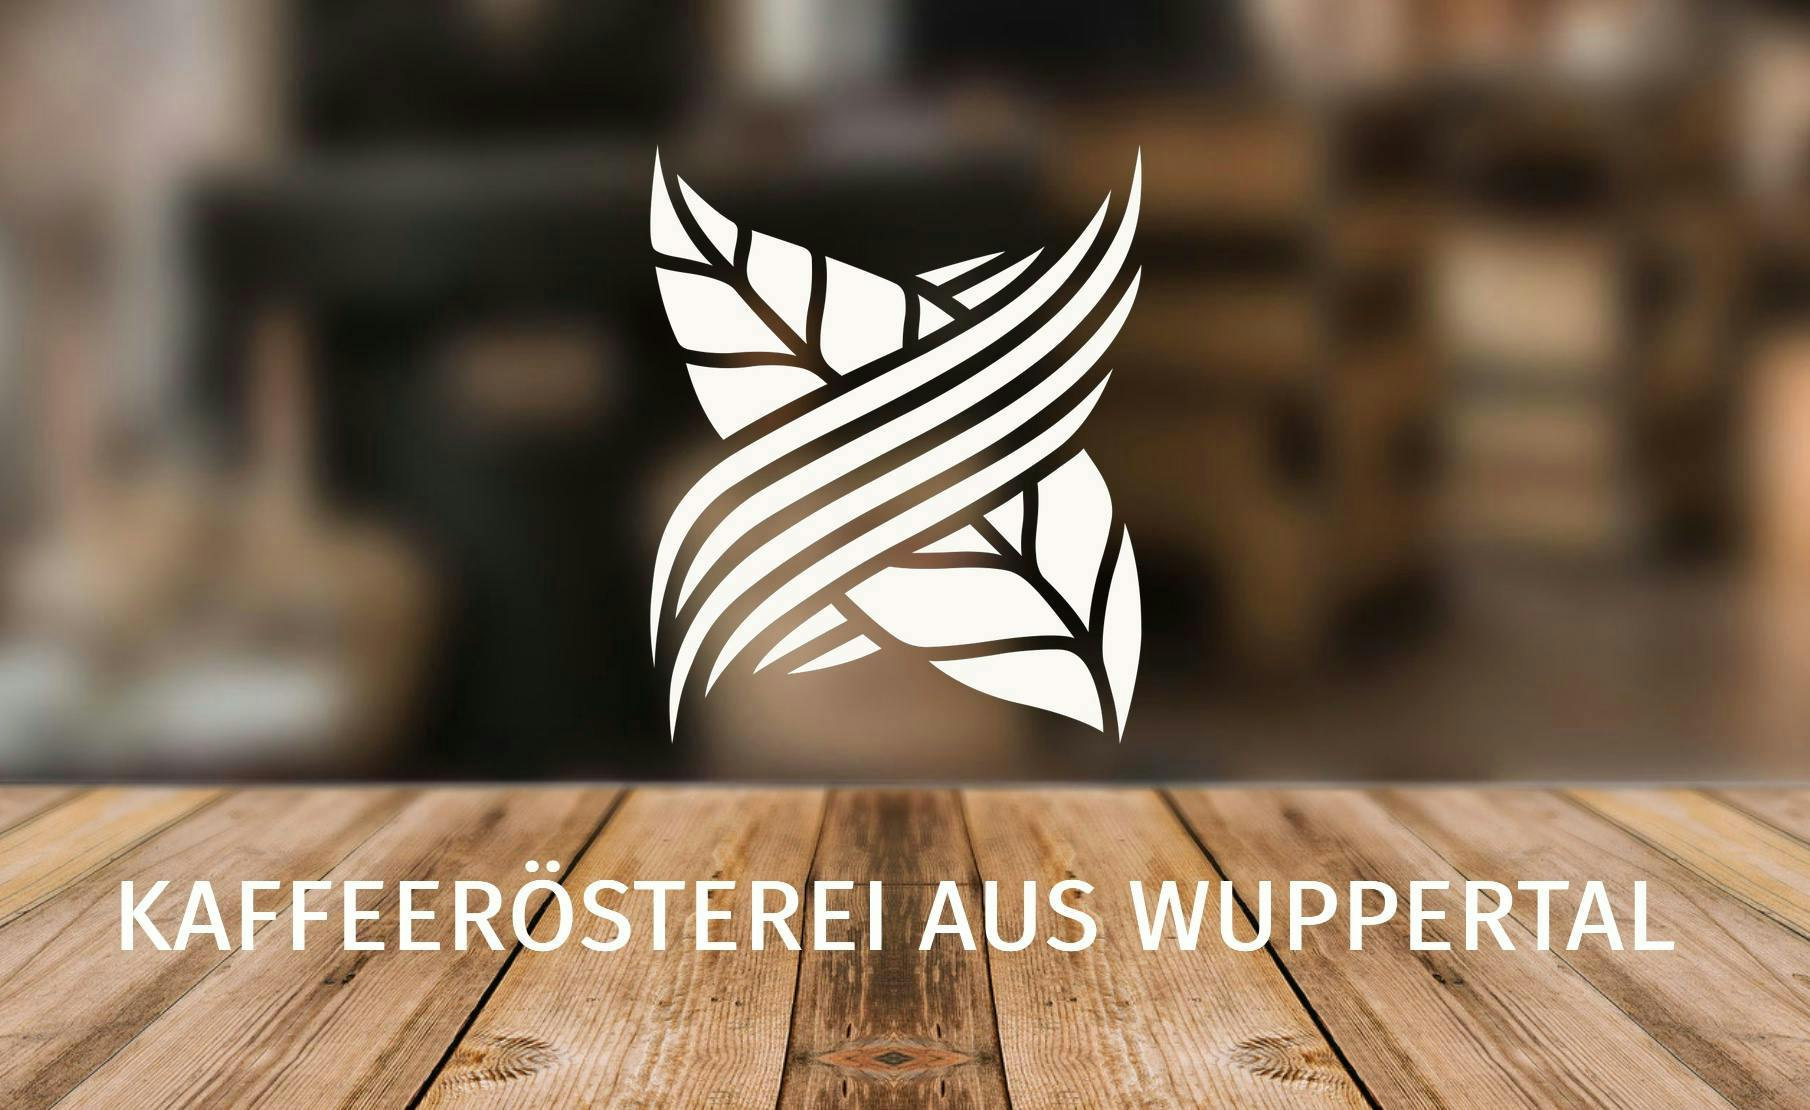 Website header van Kivamo met de zin: "Kaffeerösterei aus Wuppertal".